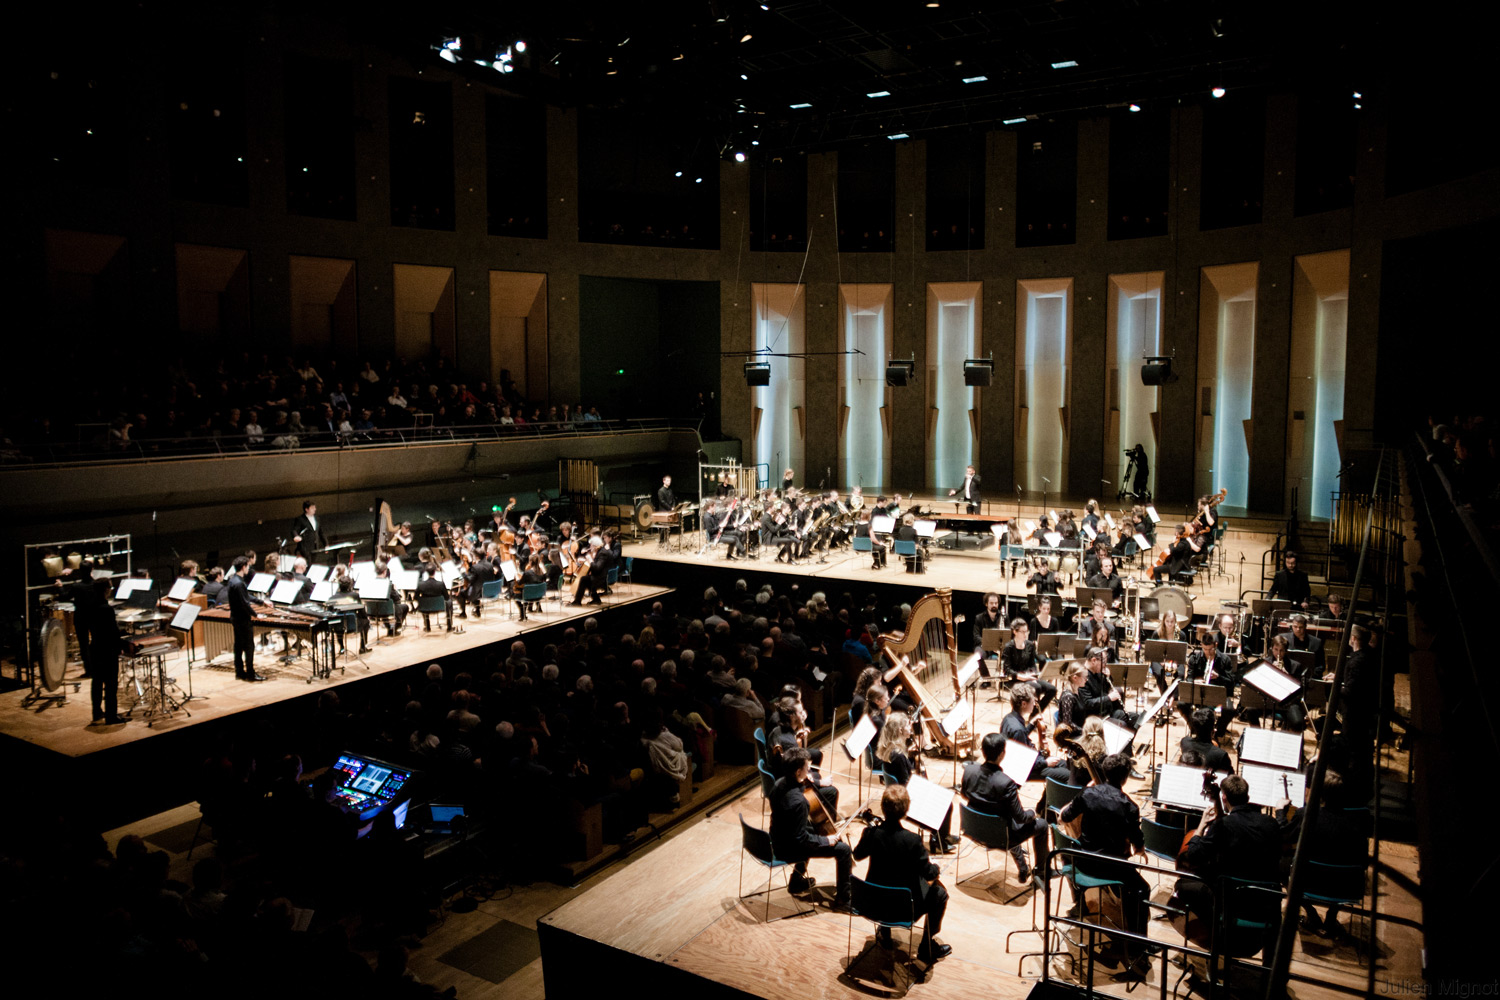 Prochains événements dans la Salle des concerts Philharmonie de Paris